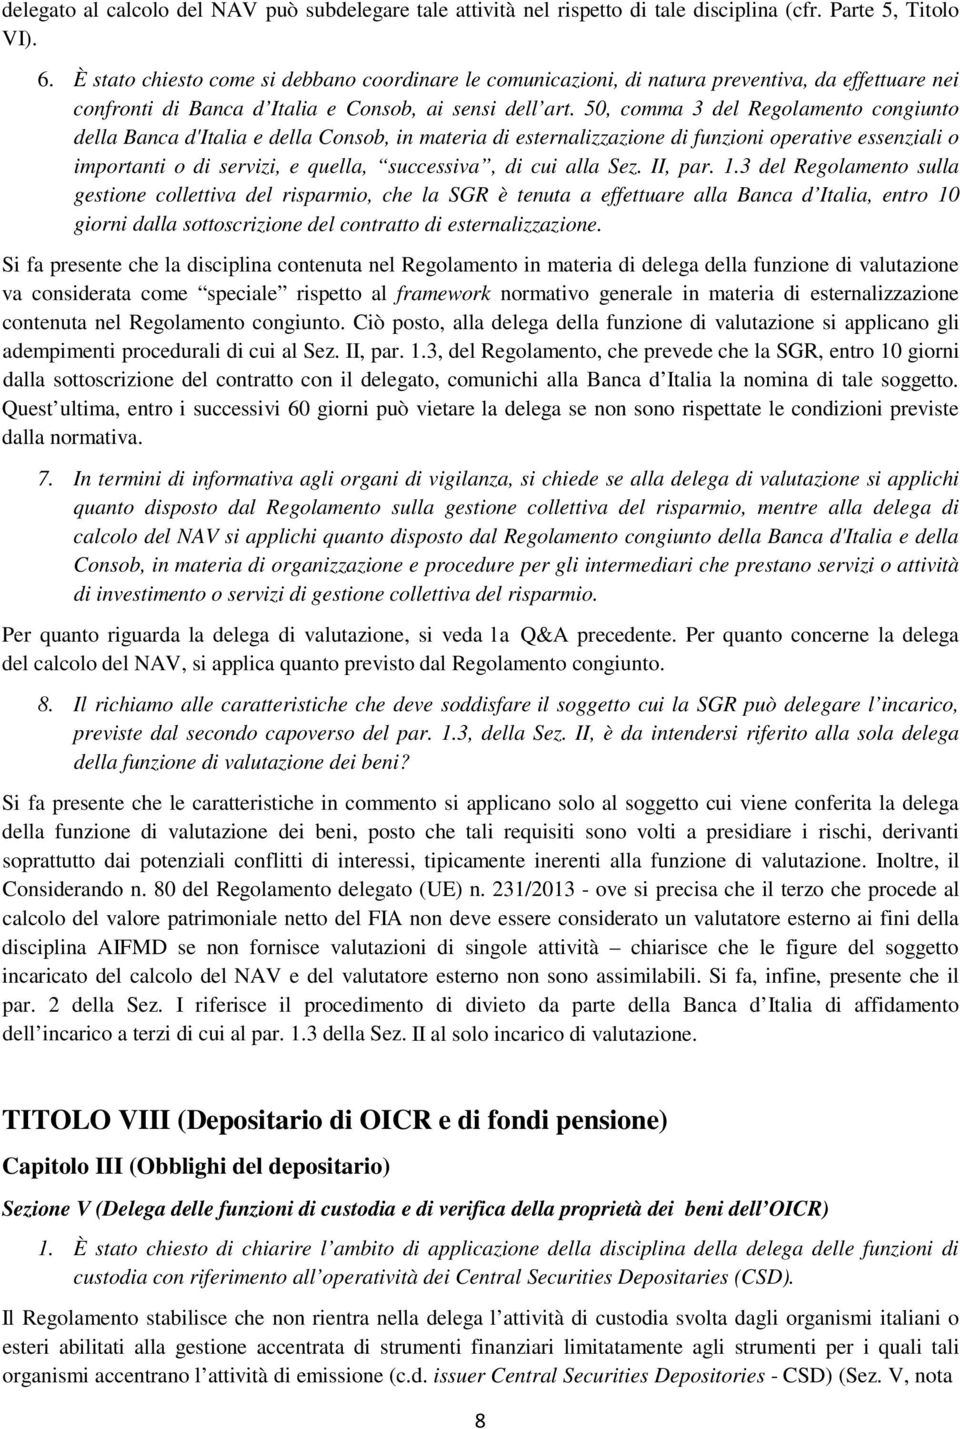 50, comma 3 del Regolamento congiunto della Banca d'italia e della Consob, in materia di esternalizzazione di funzioni operative essenziali o importanti o di servizi, e quella, successiva, di cui